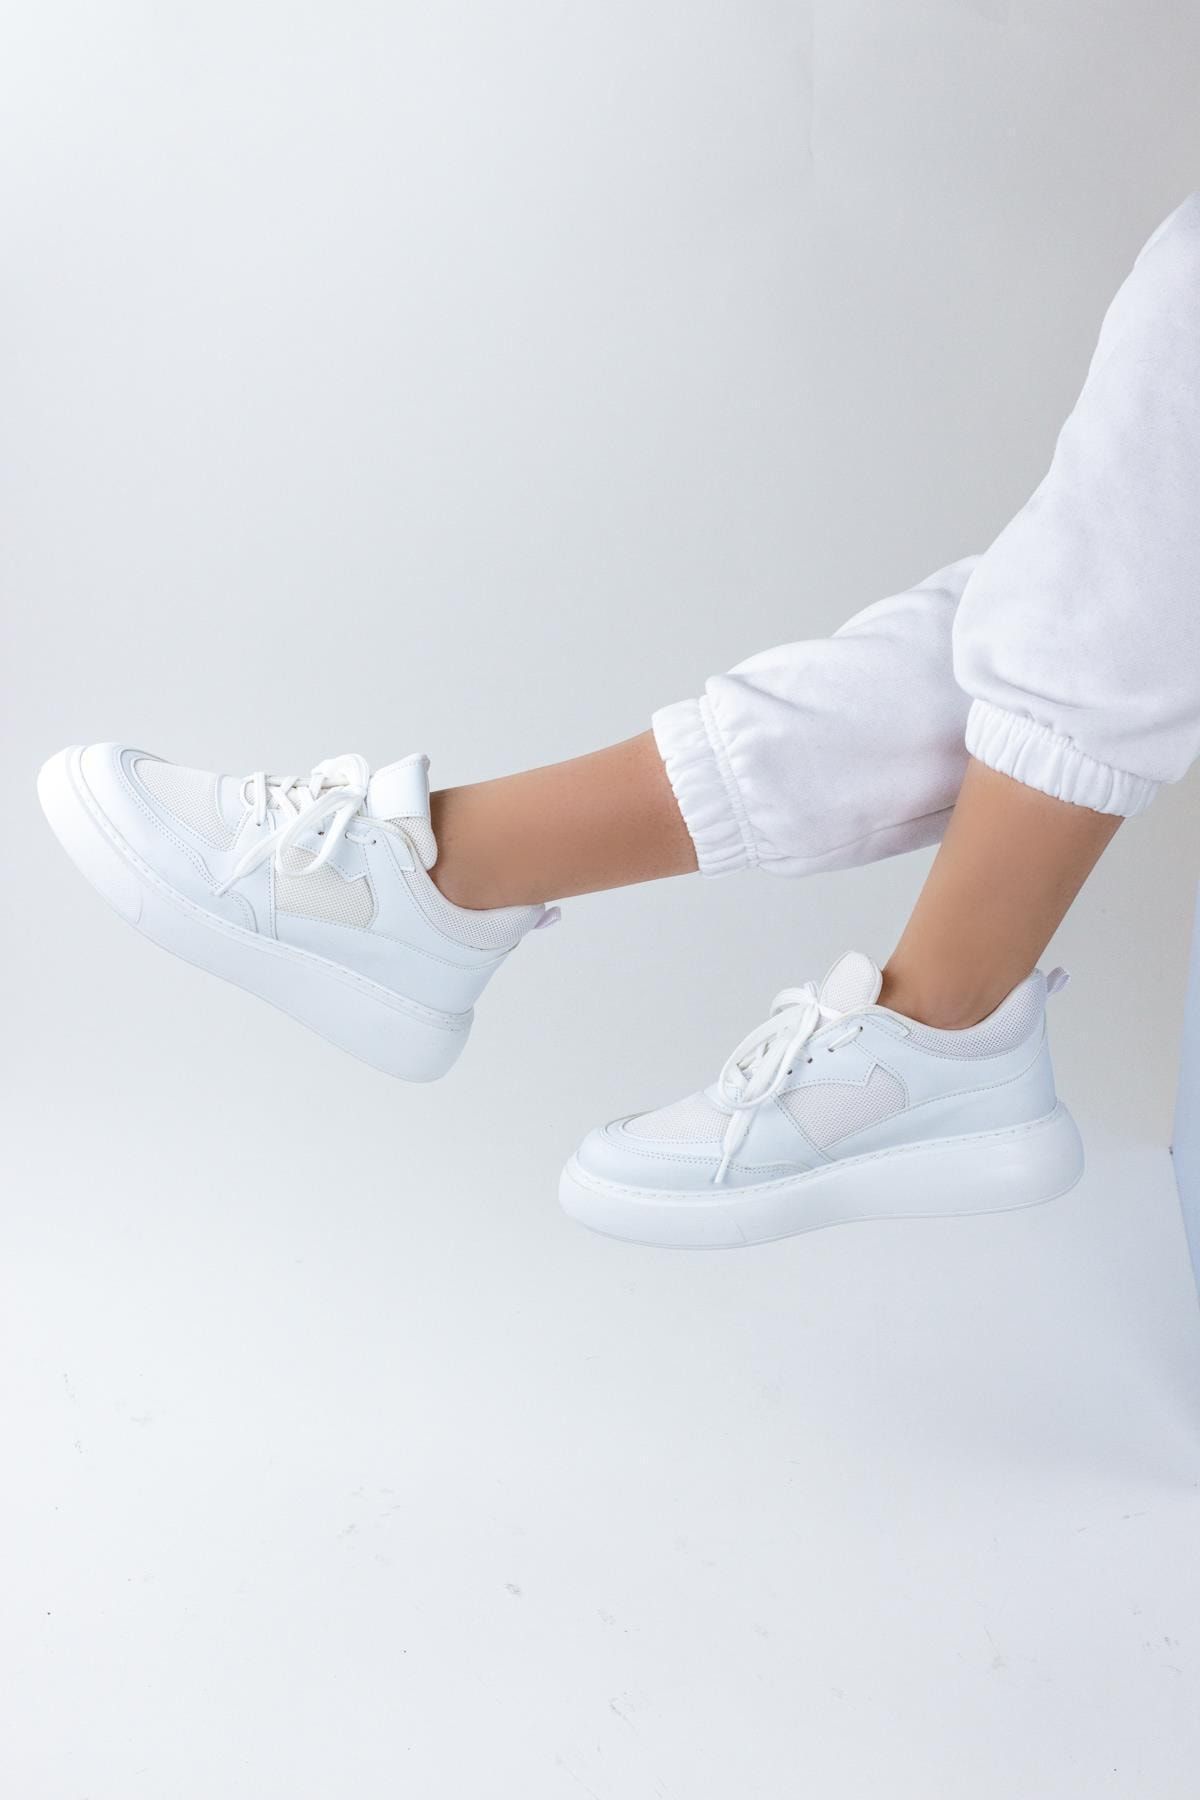 Gökhan Talay Parker Kadın Dolgu Topuklu Spor Ayakkabı Sneaker